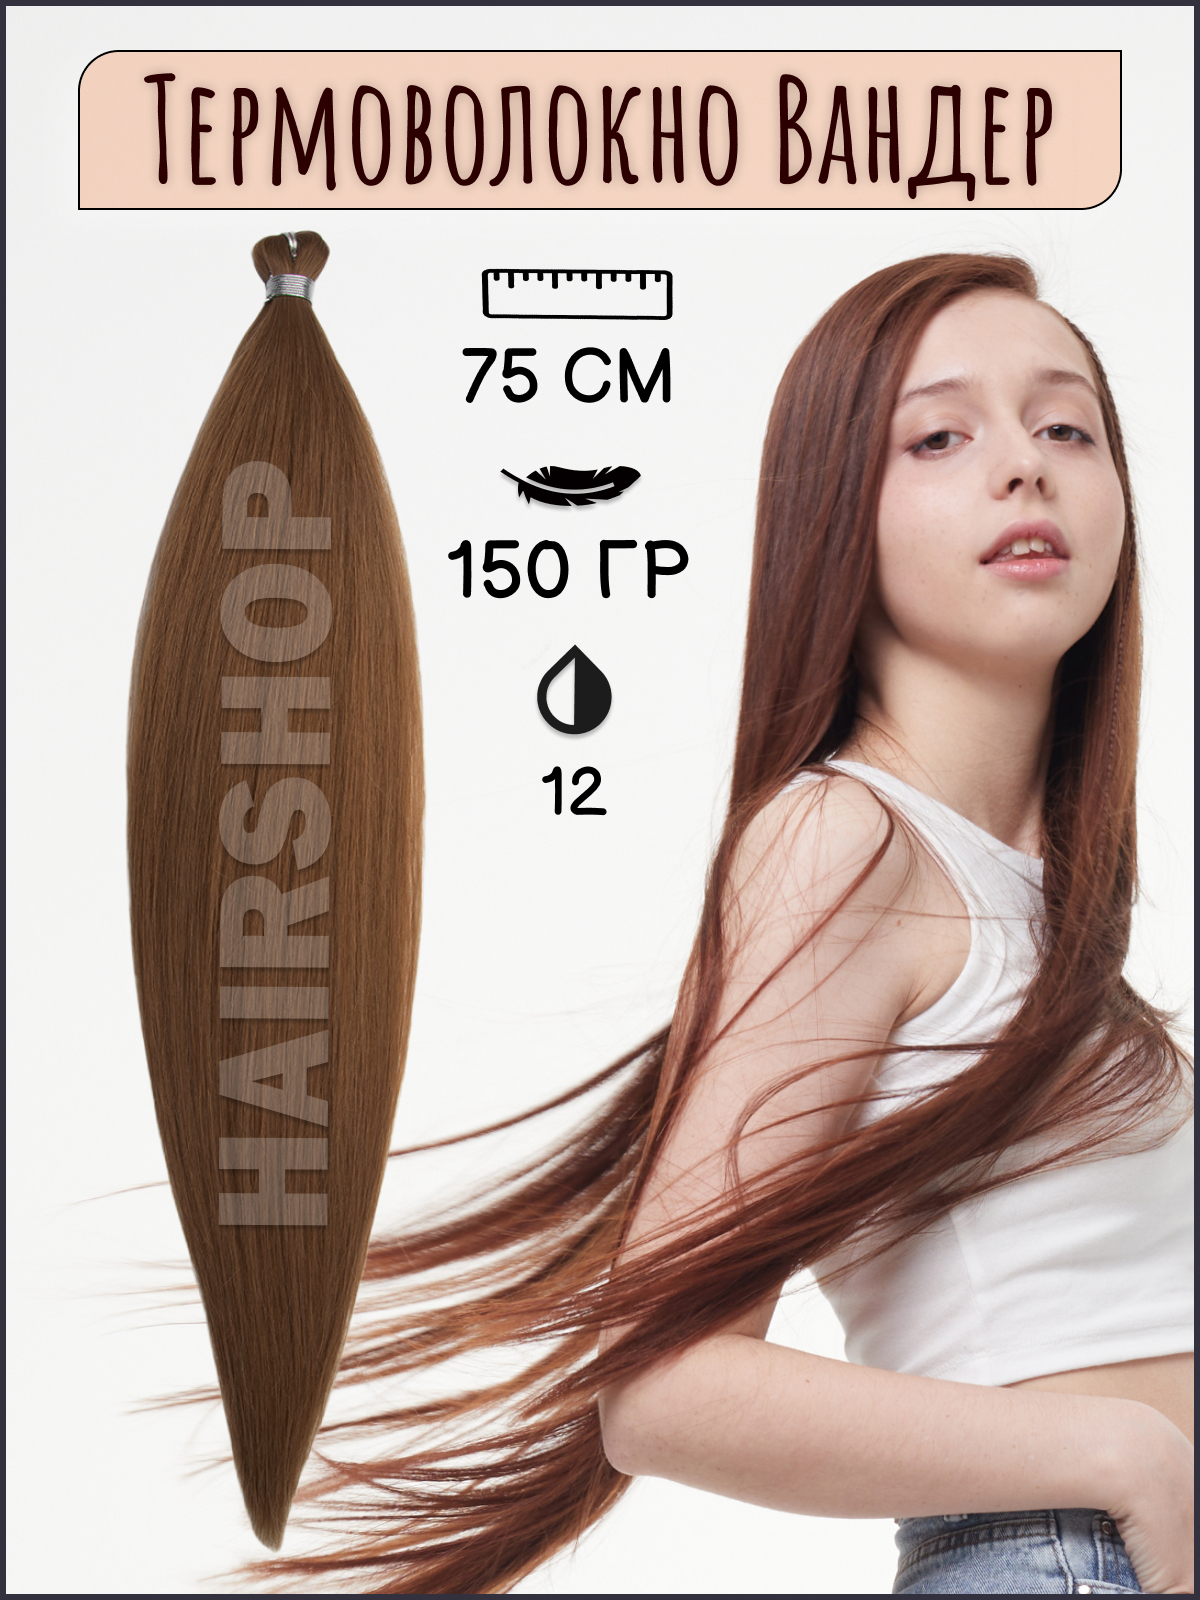 Термоволокно для наращивания Hairshop Вандер 12 150г 150см термоволокно для наращивания hairshop вандер grey 9 150г 150см